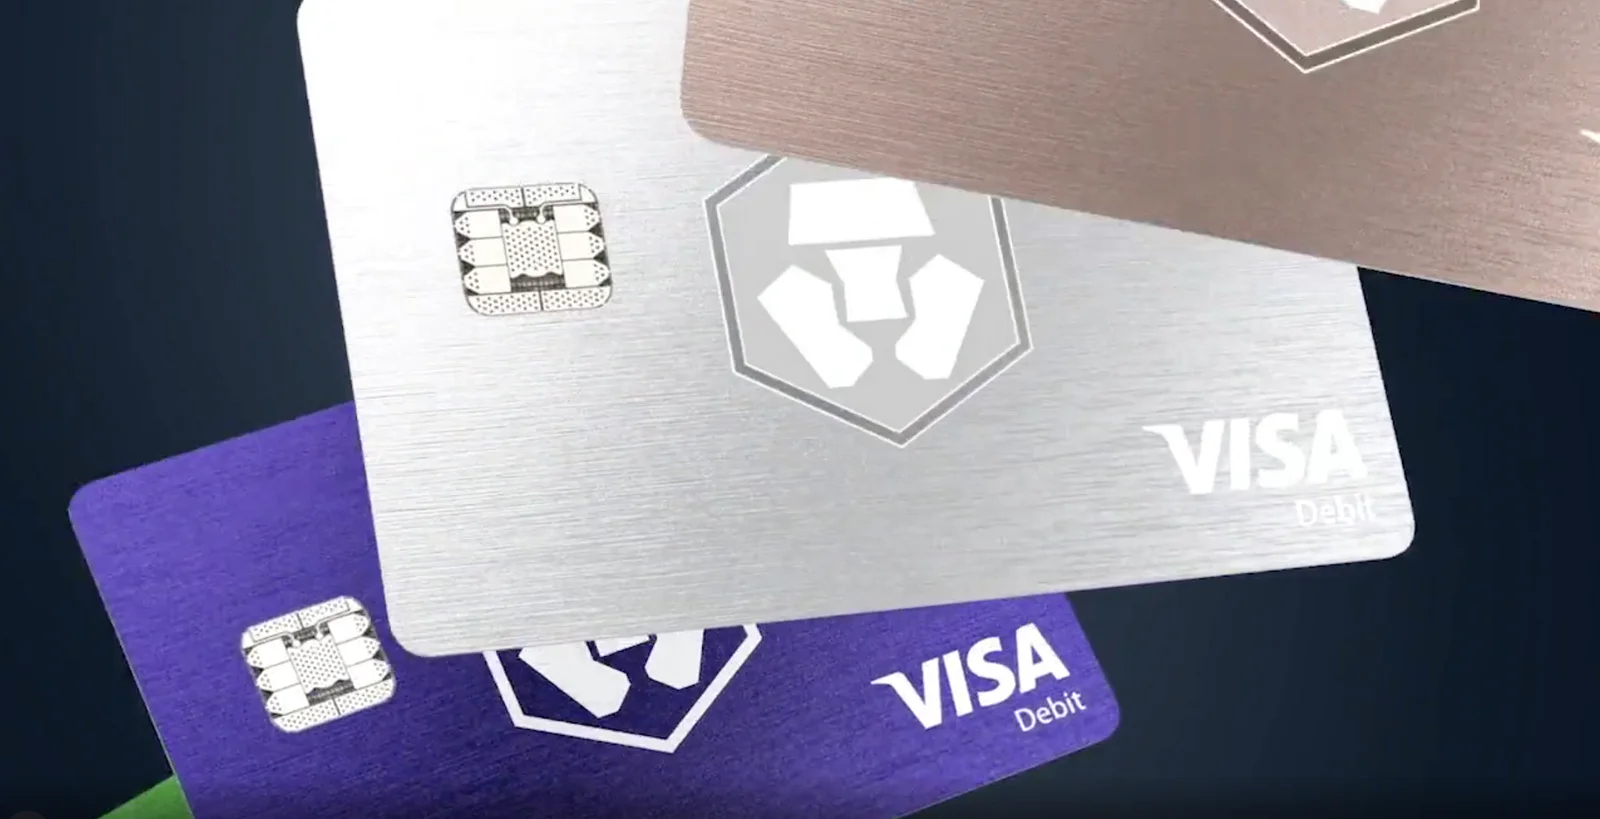 Visa card featuring crypto.com logo